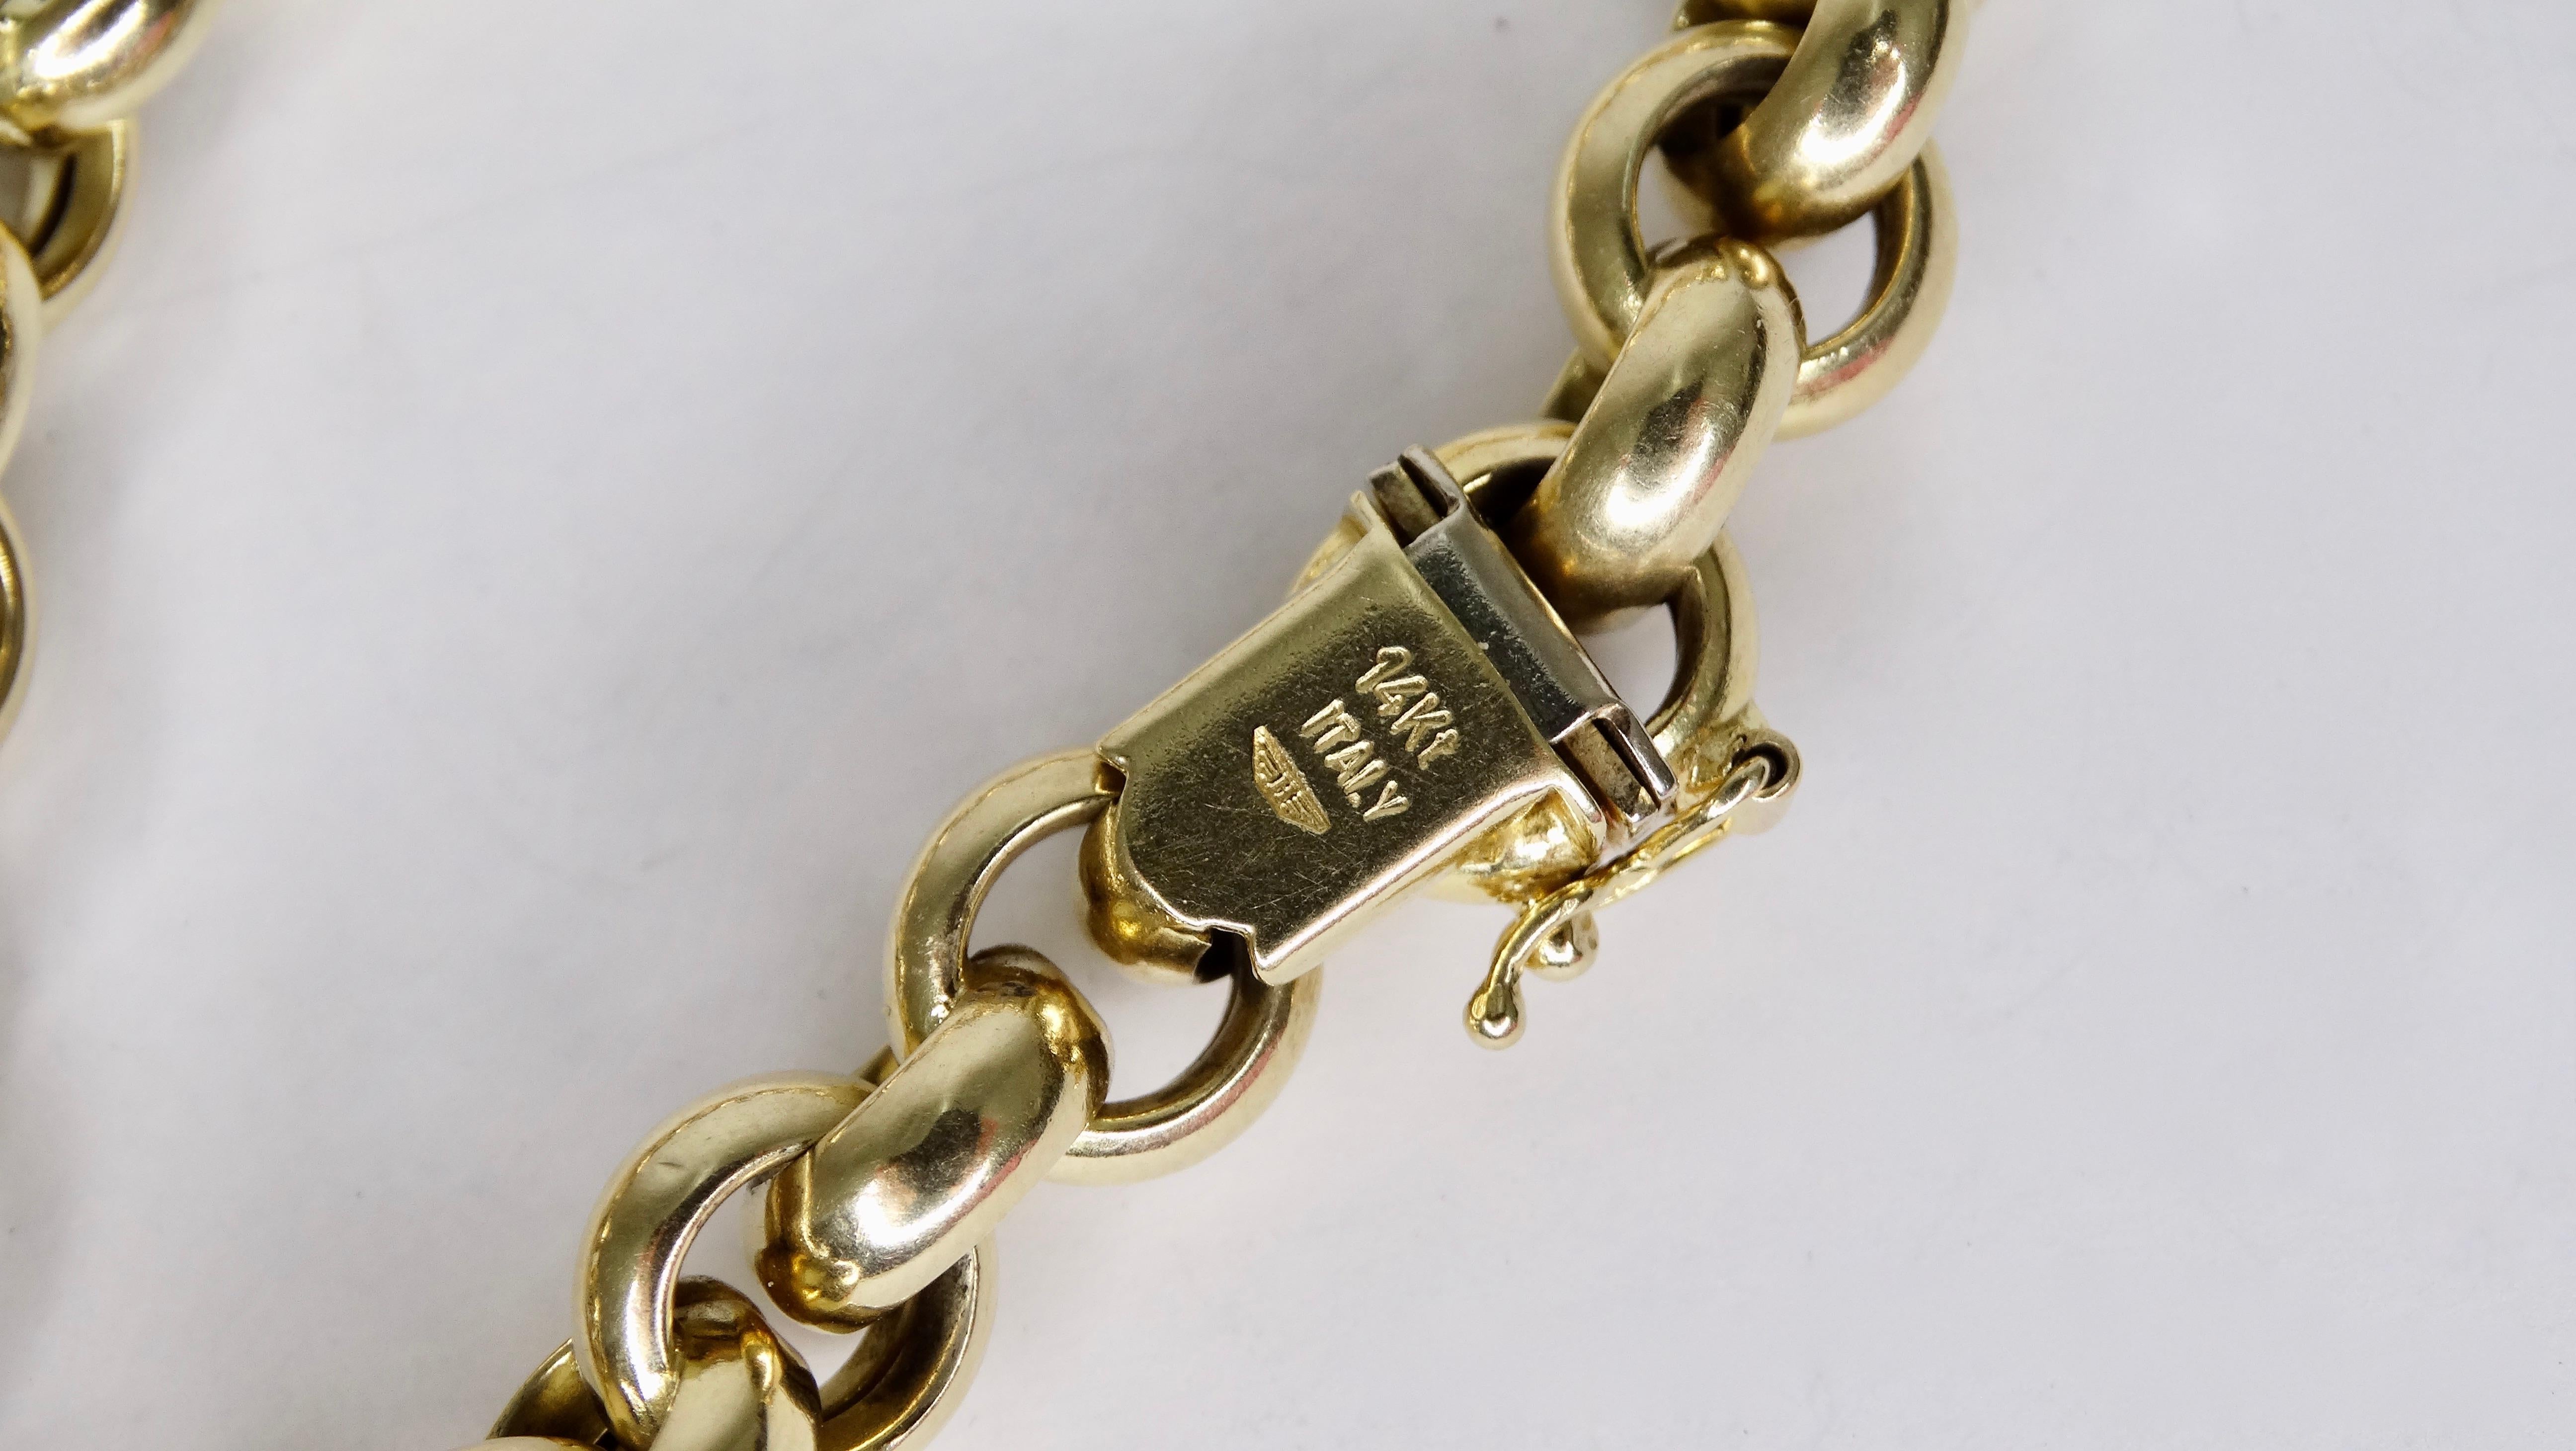 Fügen Sie diese späten 20. Jahrhundert 14k Gold Kette Gliederarmband zu Ihrem Stapel. Laschenverschluss gestempelt Italien 14k. 
Das Gesamtgewicht beträgt 18 g. Perfekt zu kombinieren mit Ihrer Lieblingsuhr von Cartier oder Hermes-Armbändern! 6-7